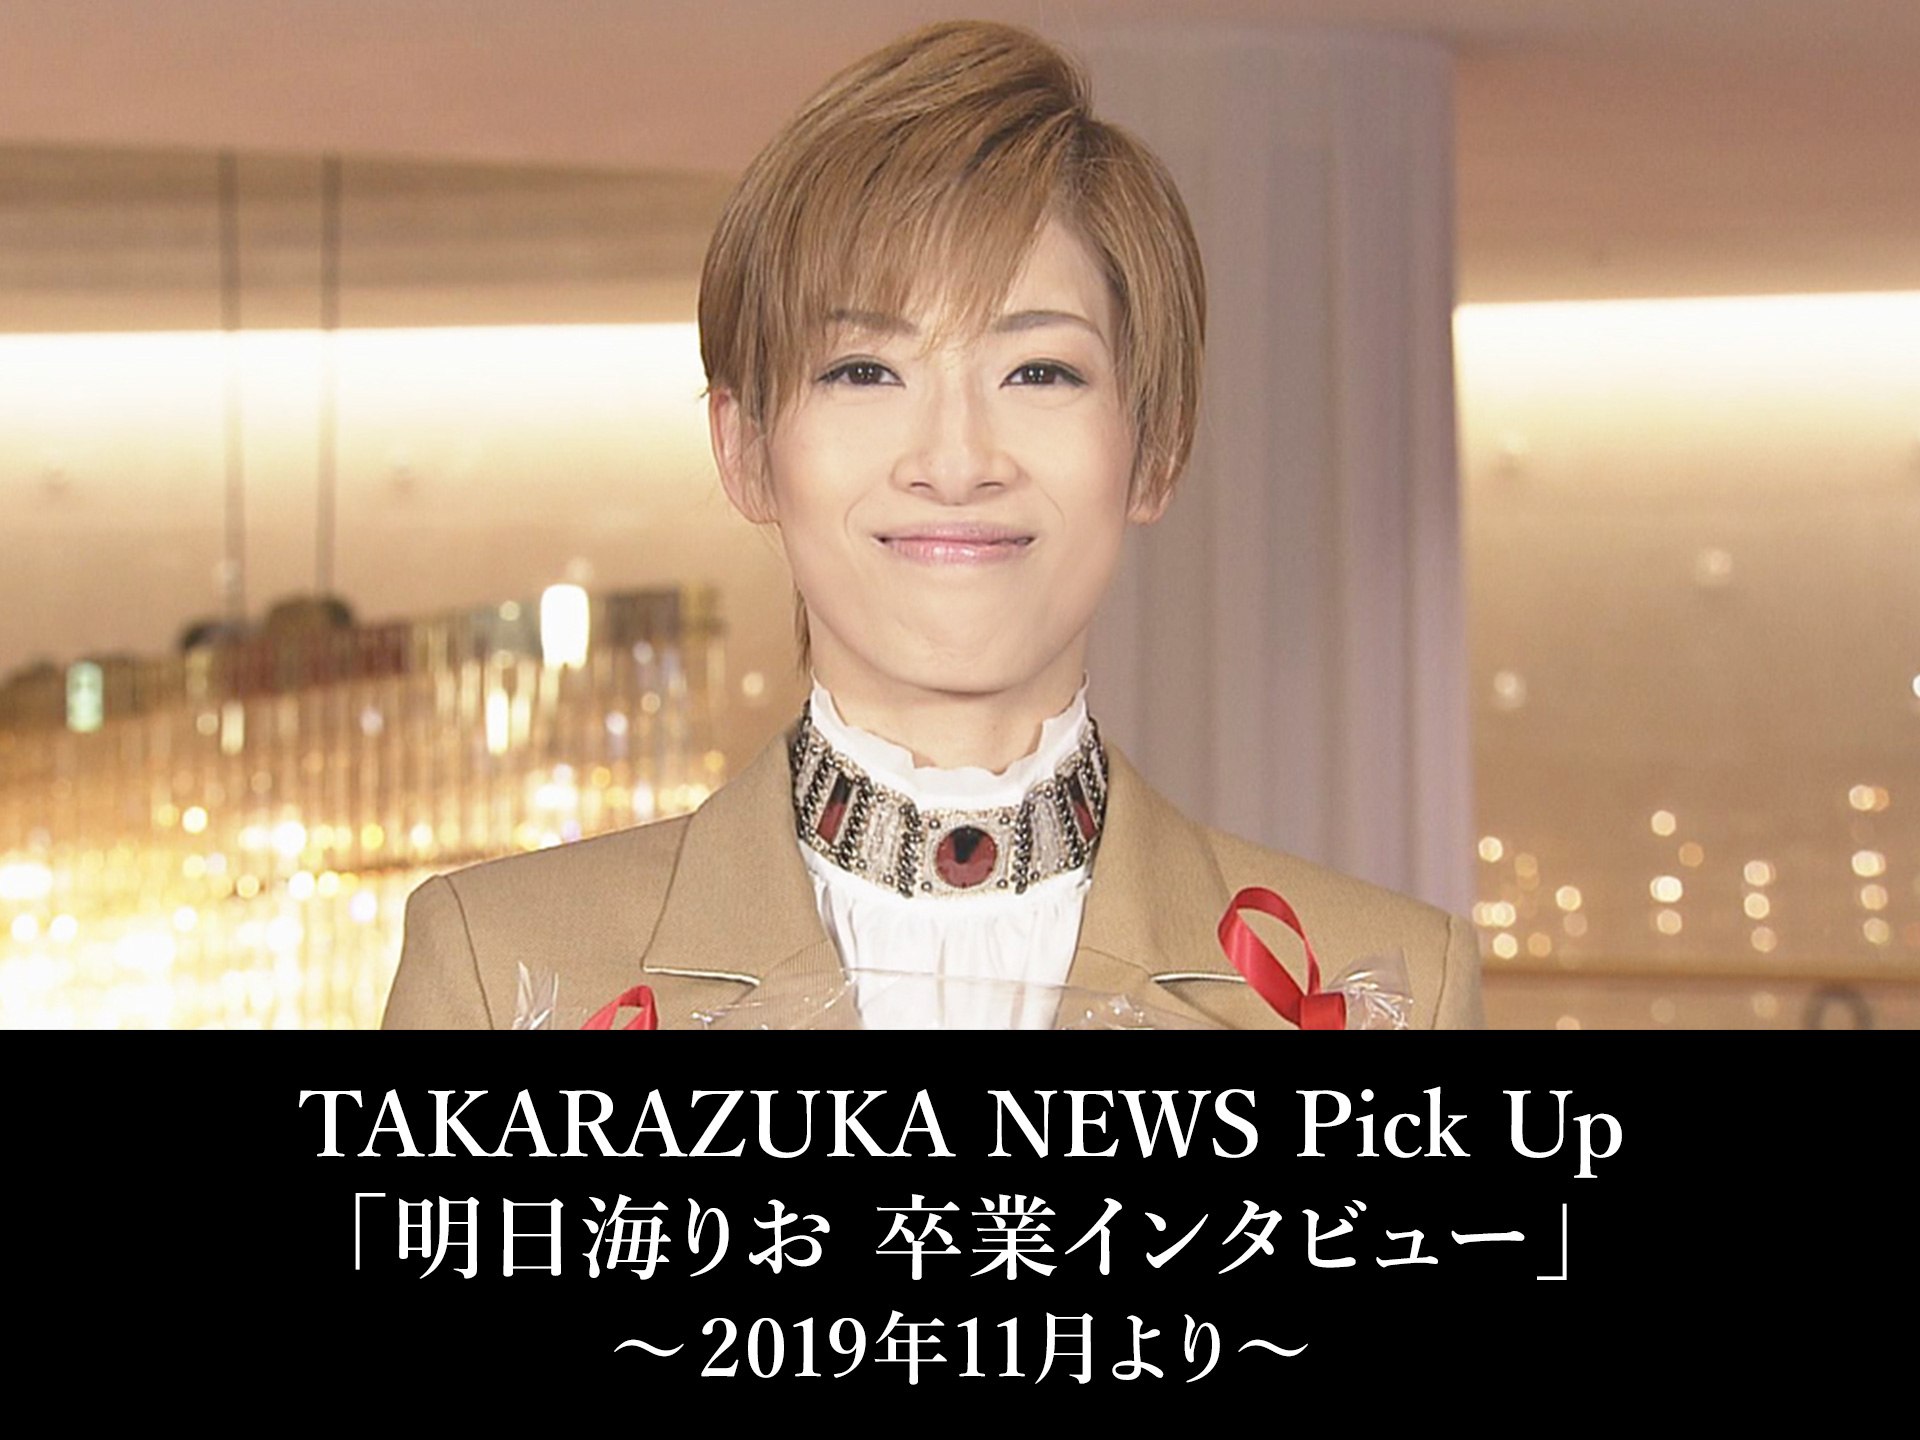 バラエティ Takarazuka News Pick Up 明日海りお 卒業インタビュー 19年11月より Takarazuka News Pick Up 明日海りお 卒業インタビュー 19年11月より フル動画 初月無料 動画配信サービスのビデオマーケット